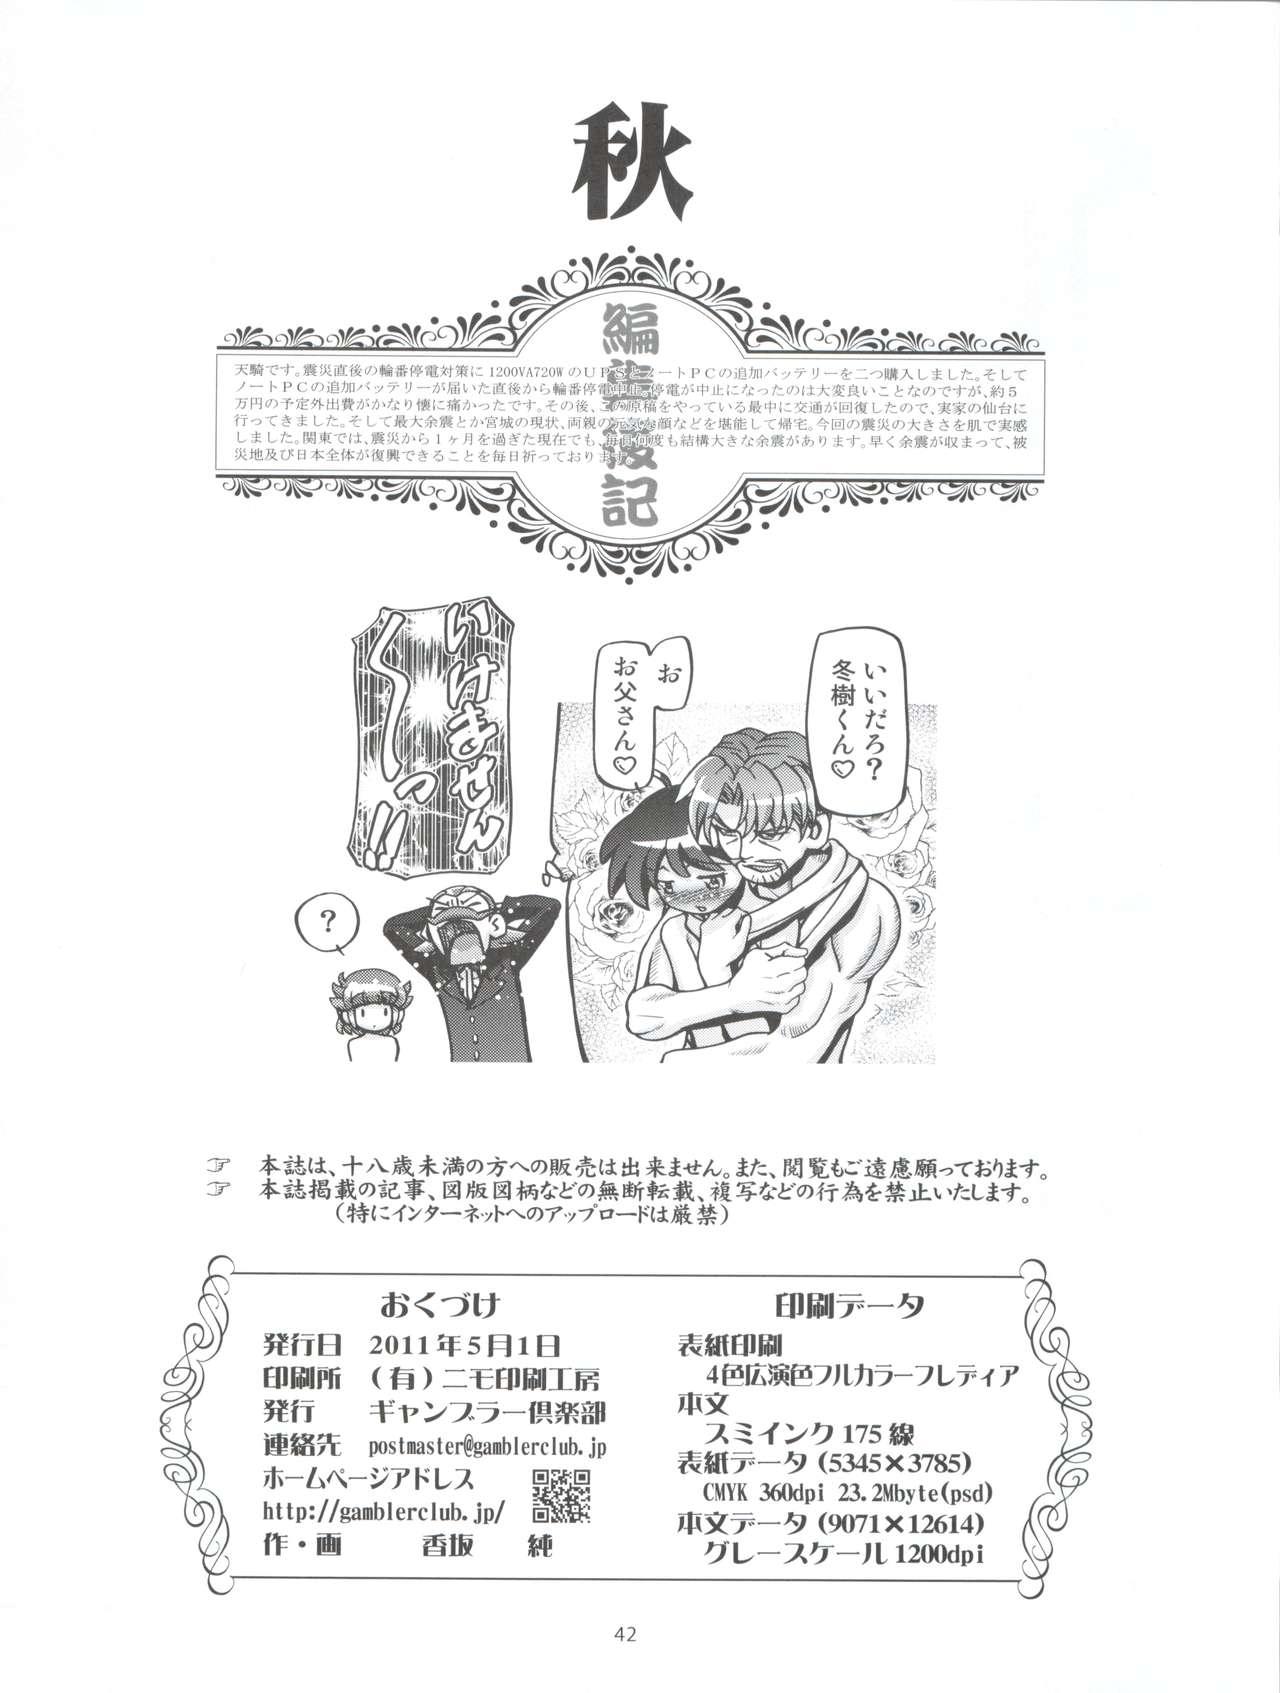 Teacher Aki Autumn - Keroro gunsou Strip - Page 42